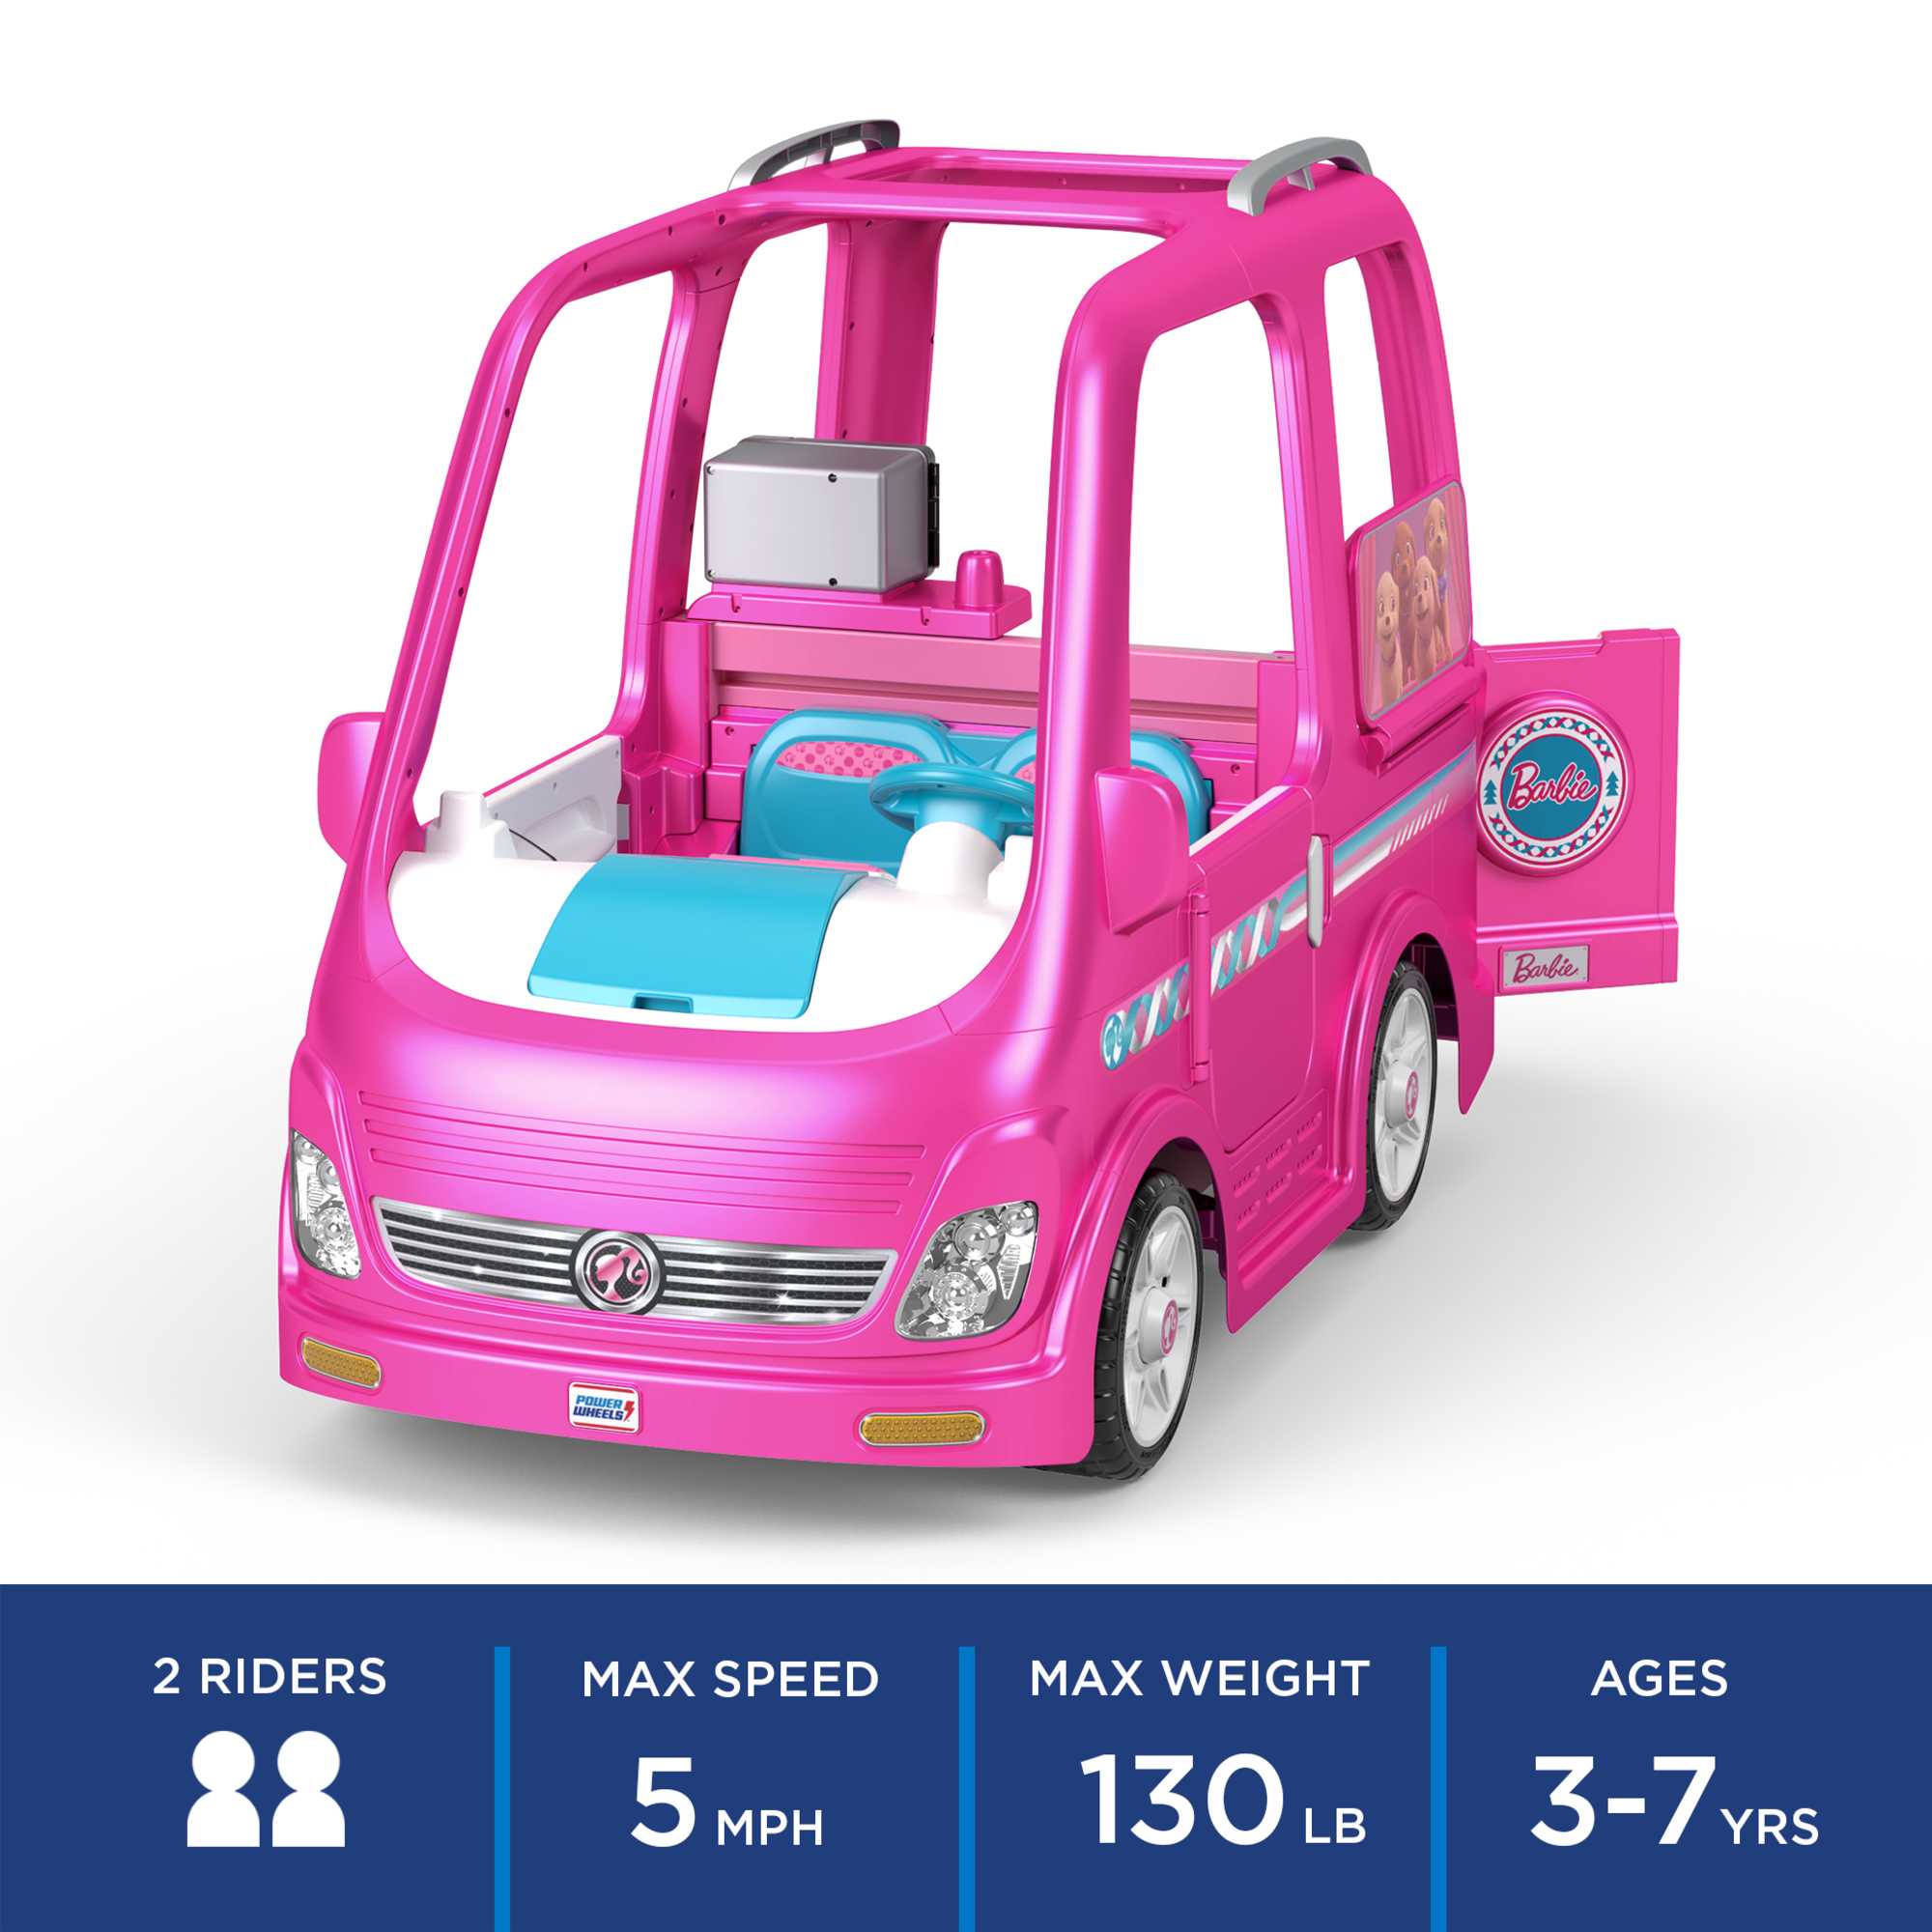 Barbie Cars & Vehicles, Camper - Kids